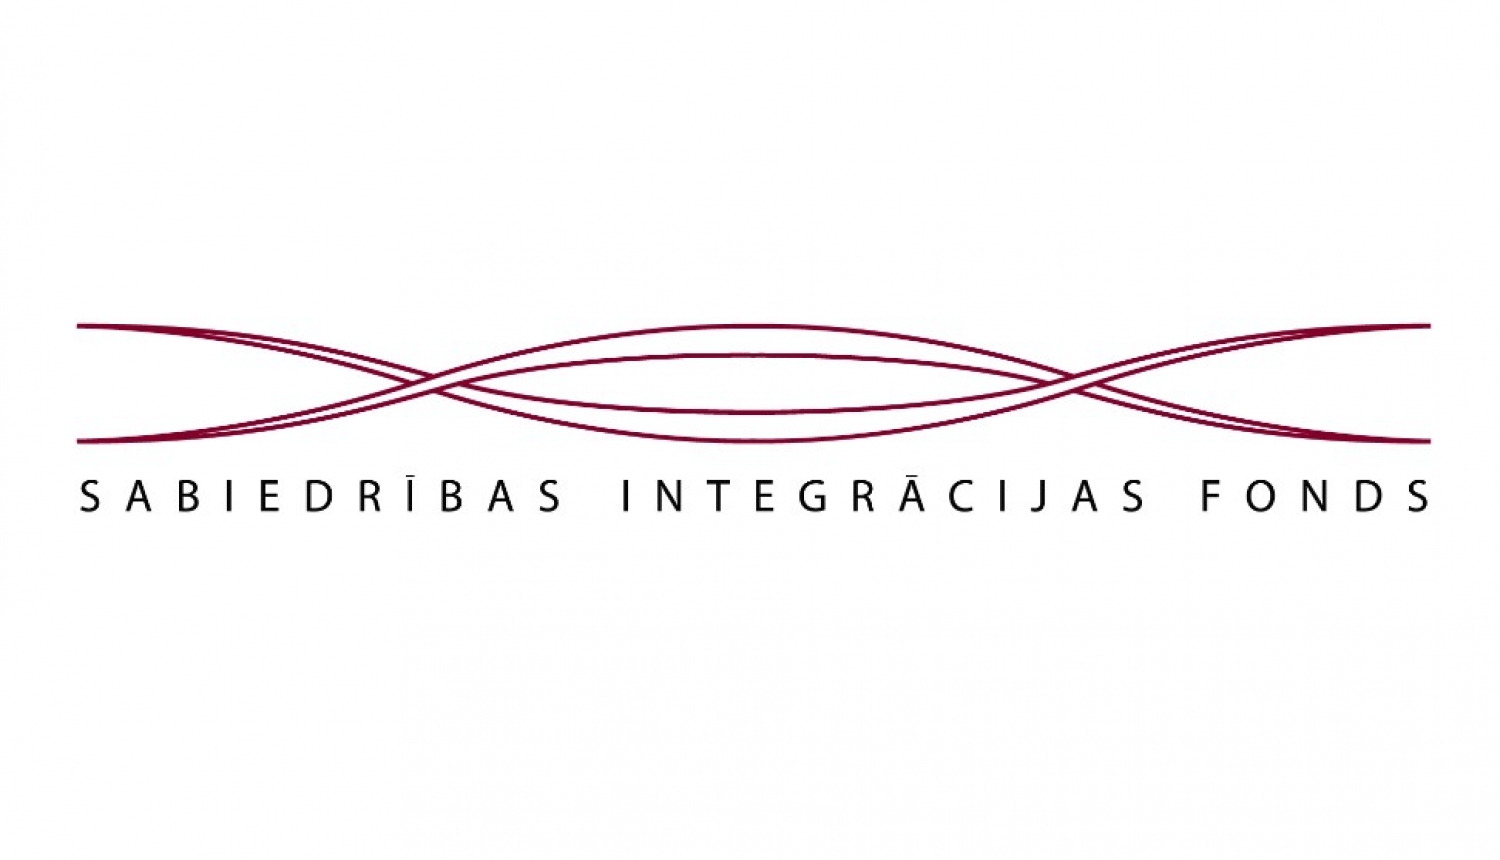 Sabiedrības integrācijas fonda logo